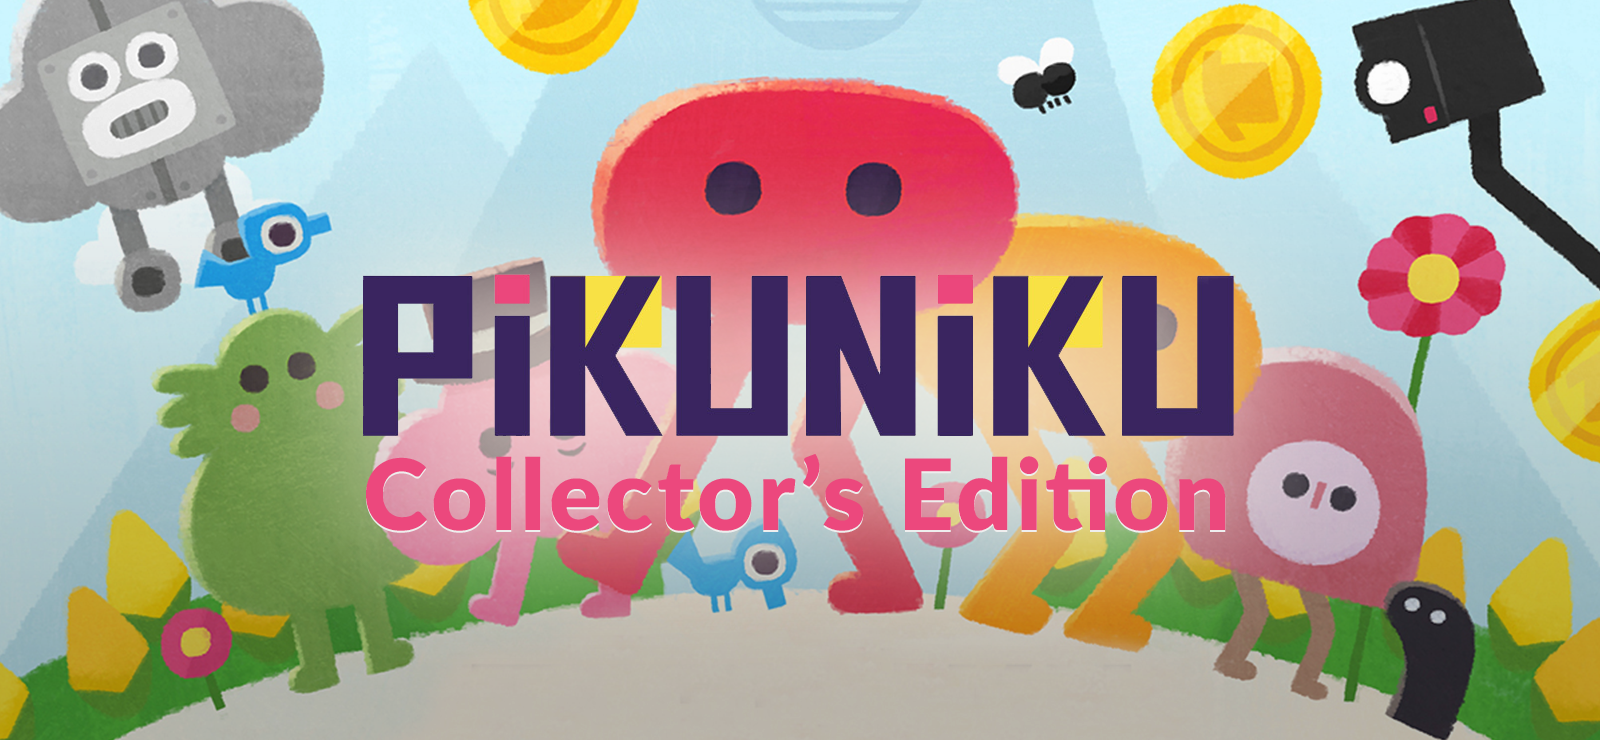 Pikuniku Collector's Edition